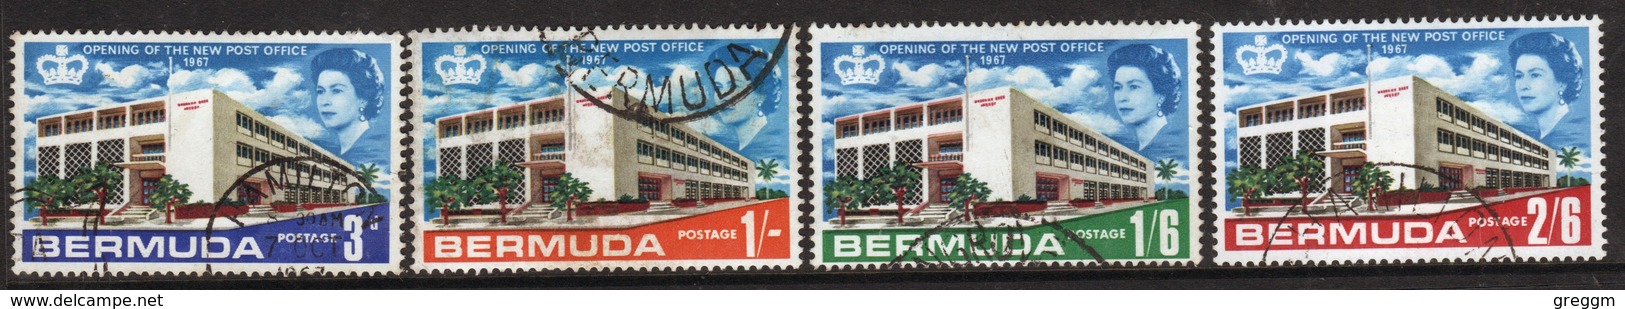 Bermuda Elizabeth II 1967 Set Of Stamps To Celebrate Opening Of New General Post Office. - Bermuda